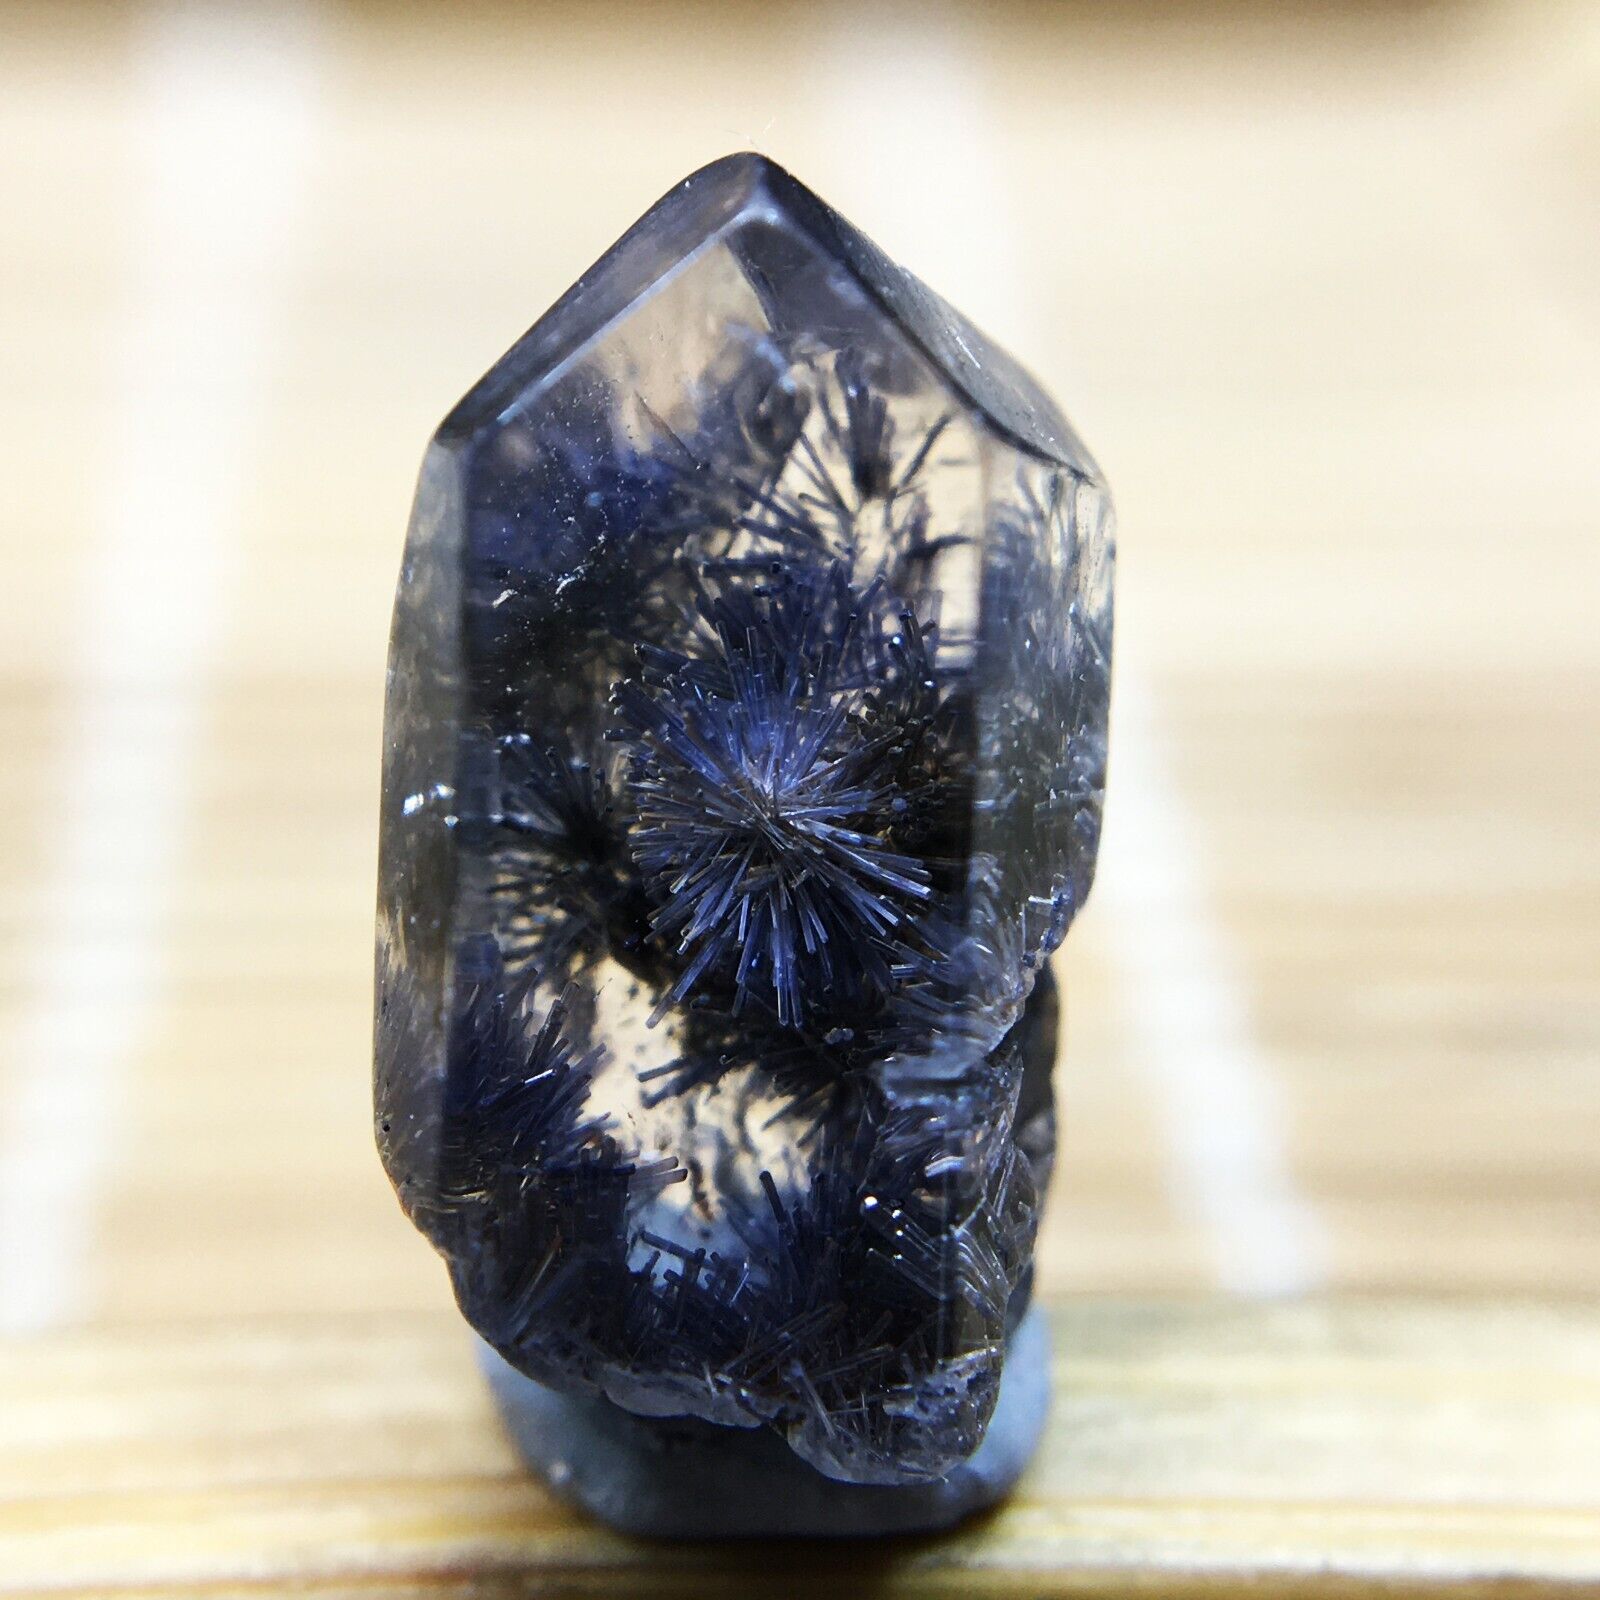 3.1Ct Very Rare NATURAL Beautiful Blue Dumortierite Quartz Crystal Specimen